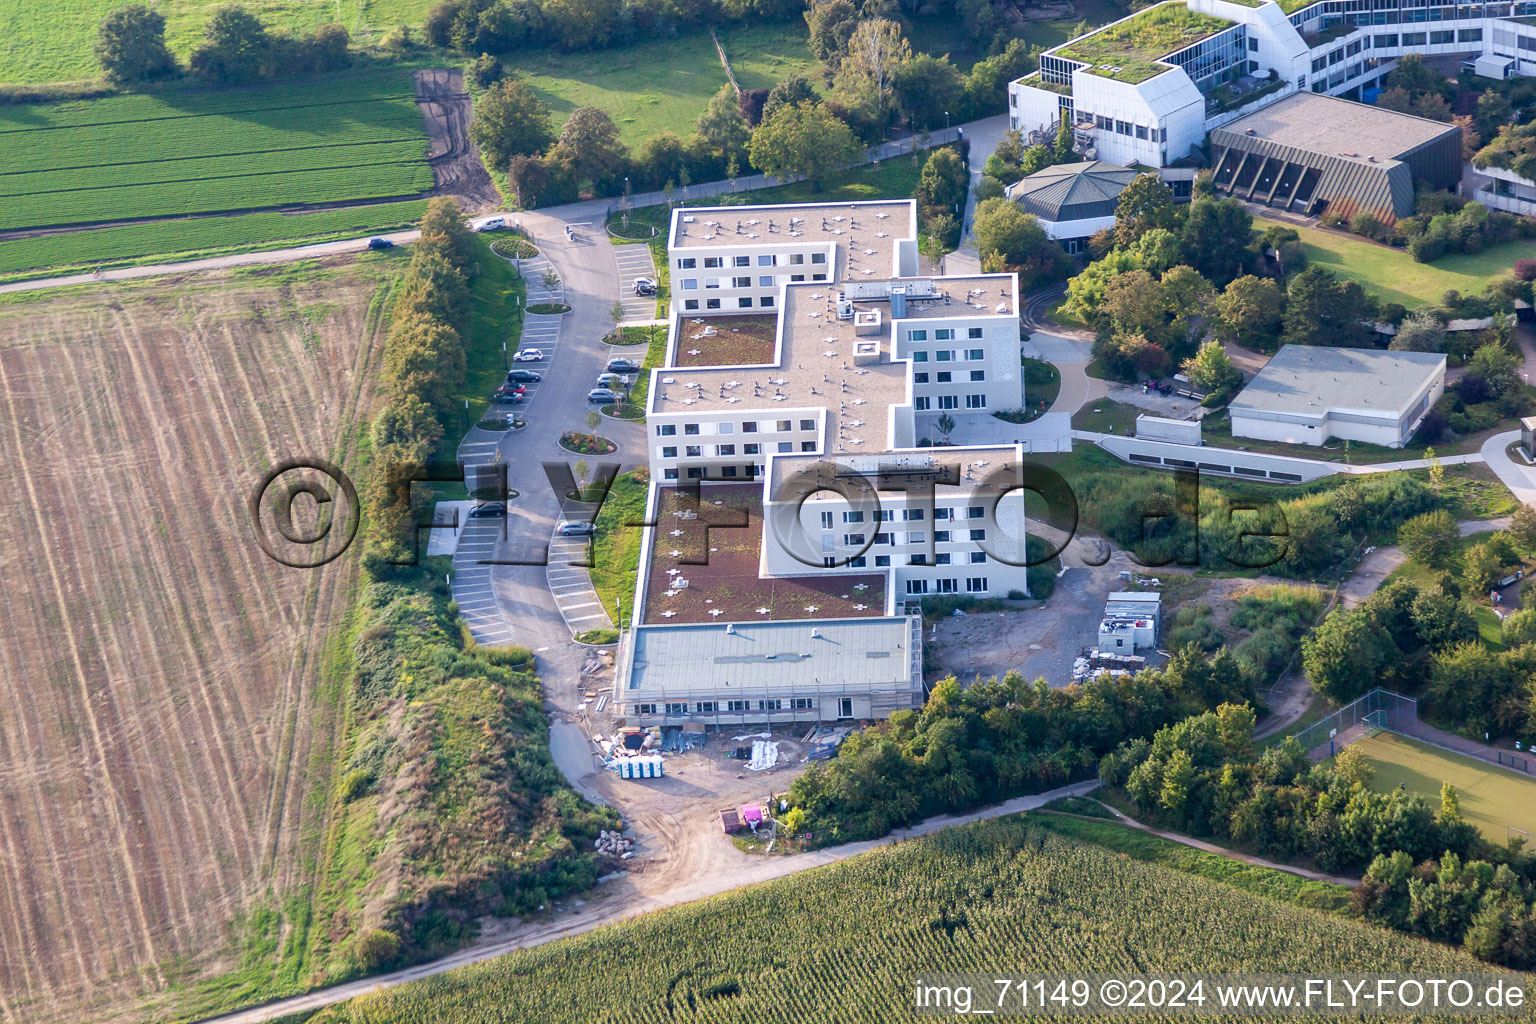 Clinique des accidents BG à le quartier Oggersheim in Ludwigshafen am Rhein dans le département Rhénanie-Palatinat, Allemagne du point de vue du drone